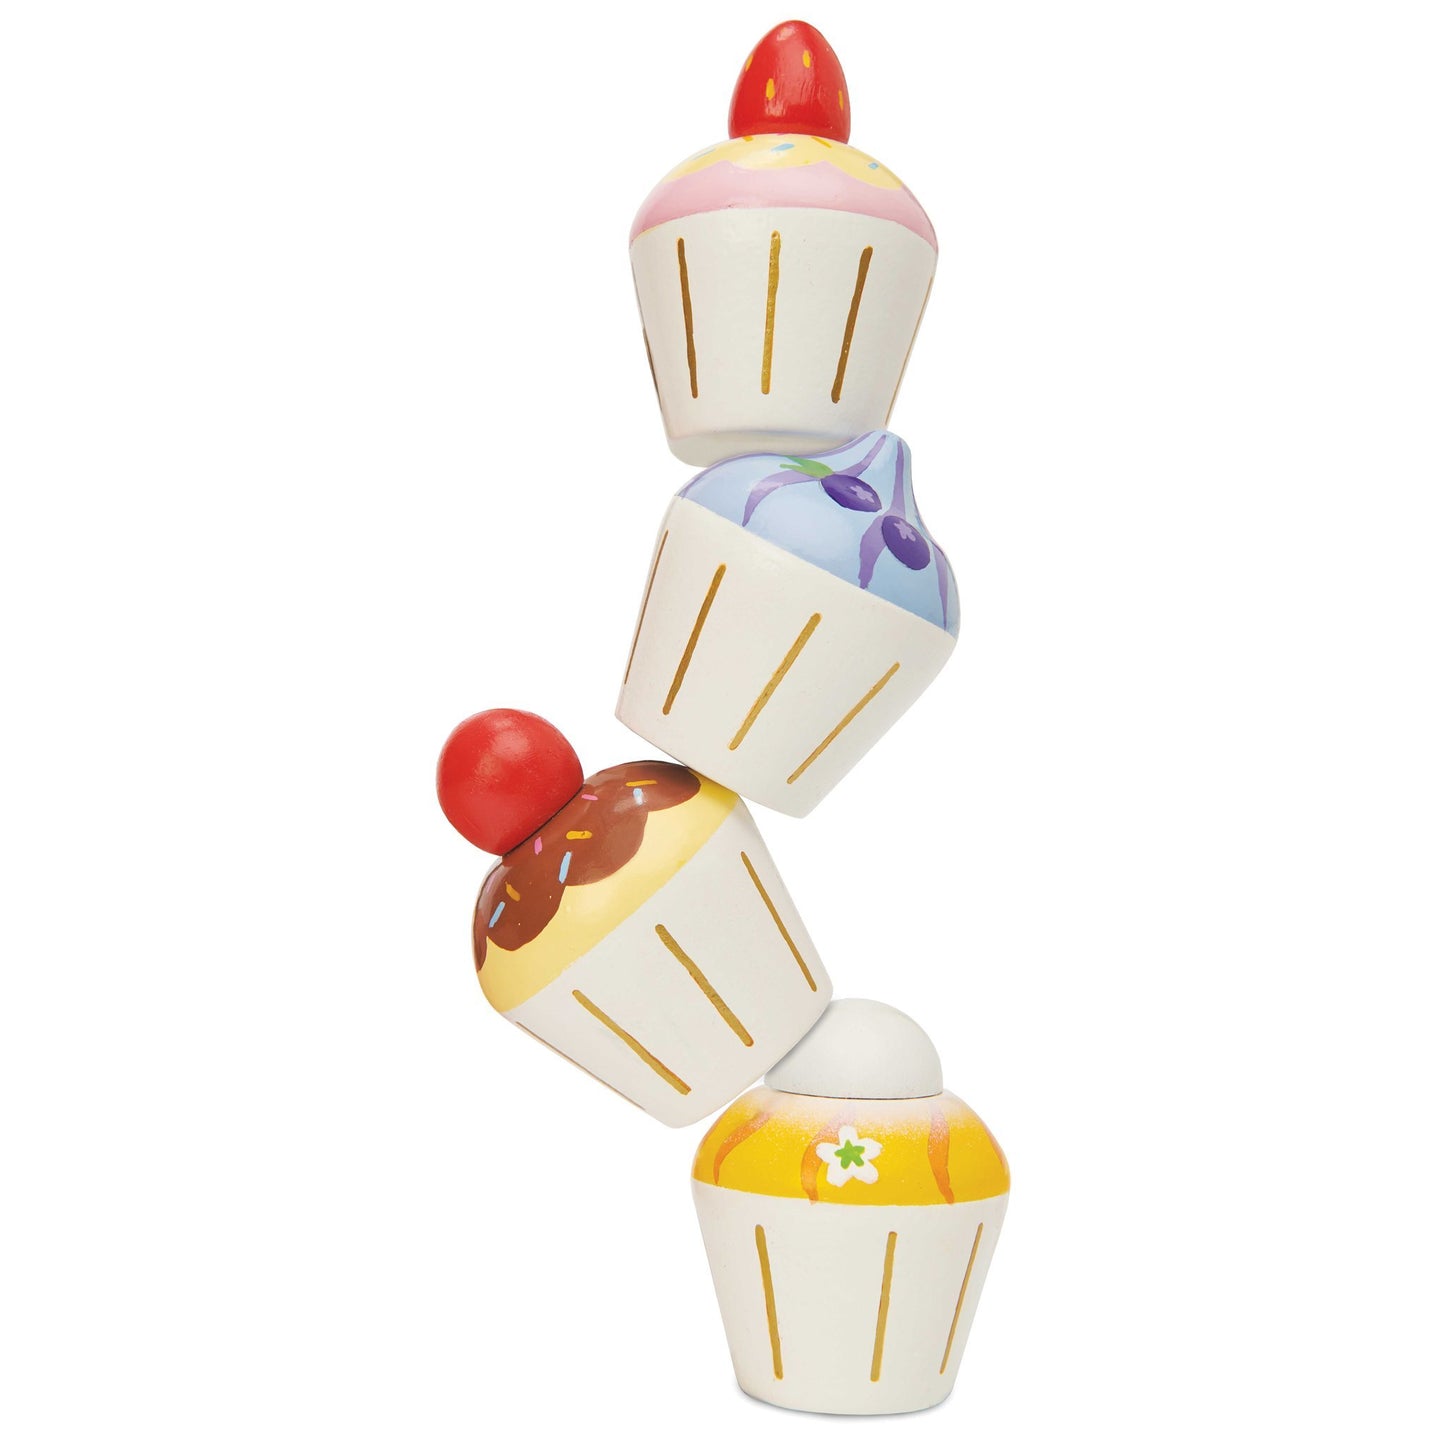 Le Toy Van cupcake set of 4